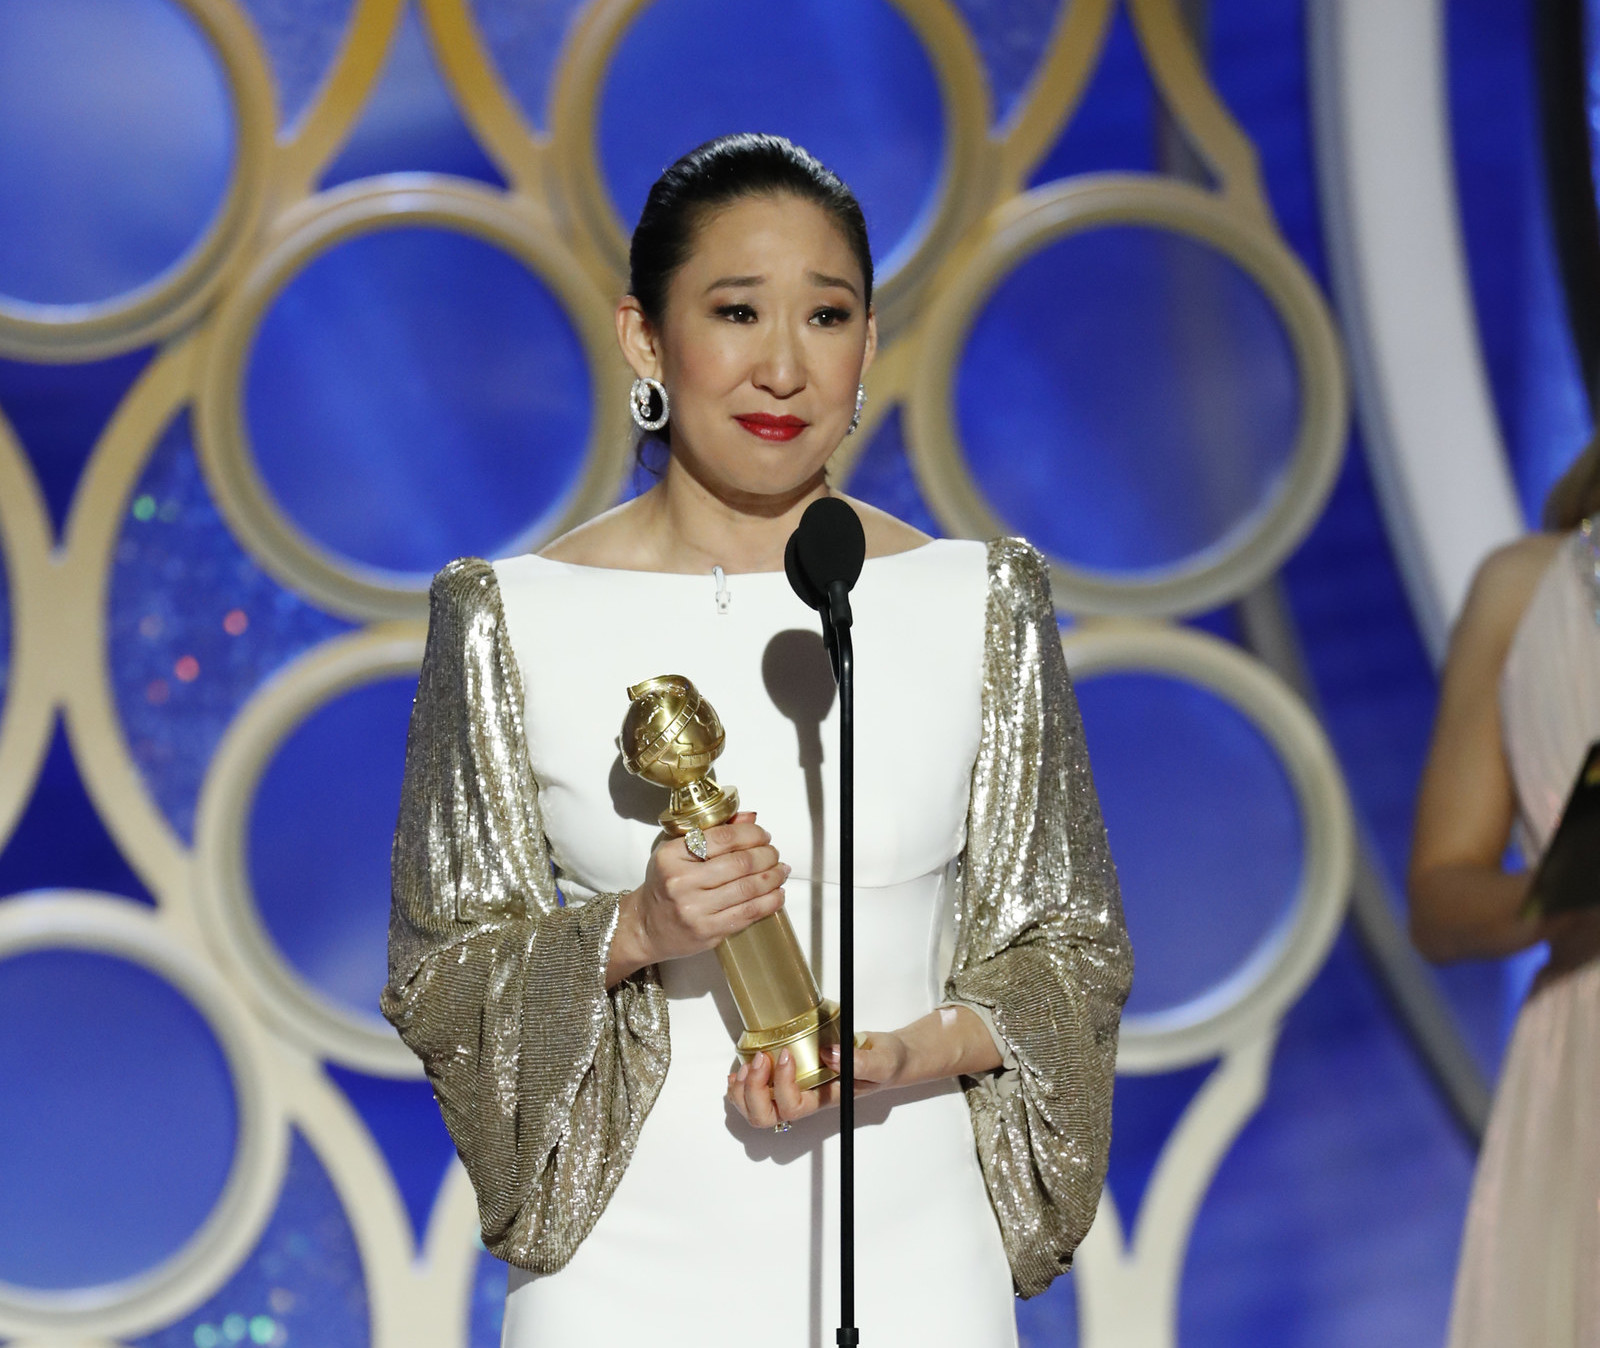 Với giải Nữ diễn viên chính xuất sắc - chính kịch: Sandra Oh (Hàn Quốc) trong Killing Eve ghi dấu ấn lịch sử khi trở thành nghệ sĩ châu Á đầu tiên đạt được giải thưởng danh giá này kể từ chiếc cúp của Yoko Shimada dành cho bộ phim “Shogun” vào năm 1981.Ảnh: AP